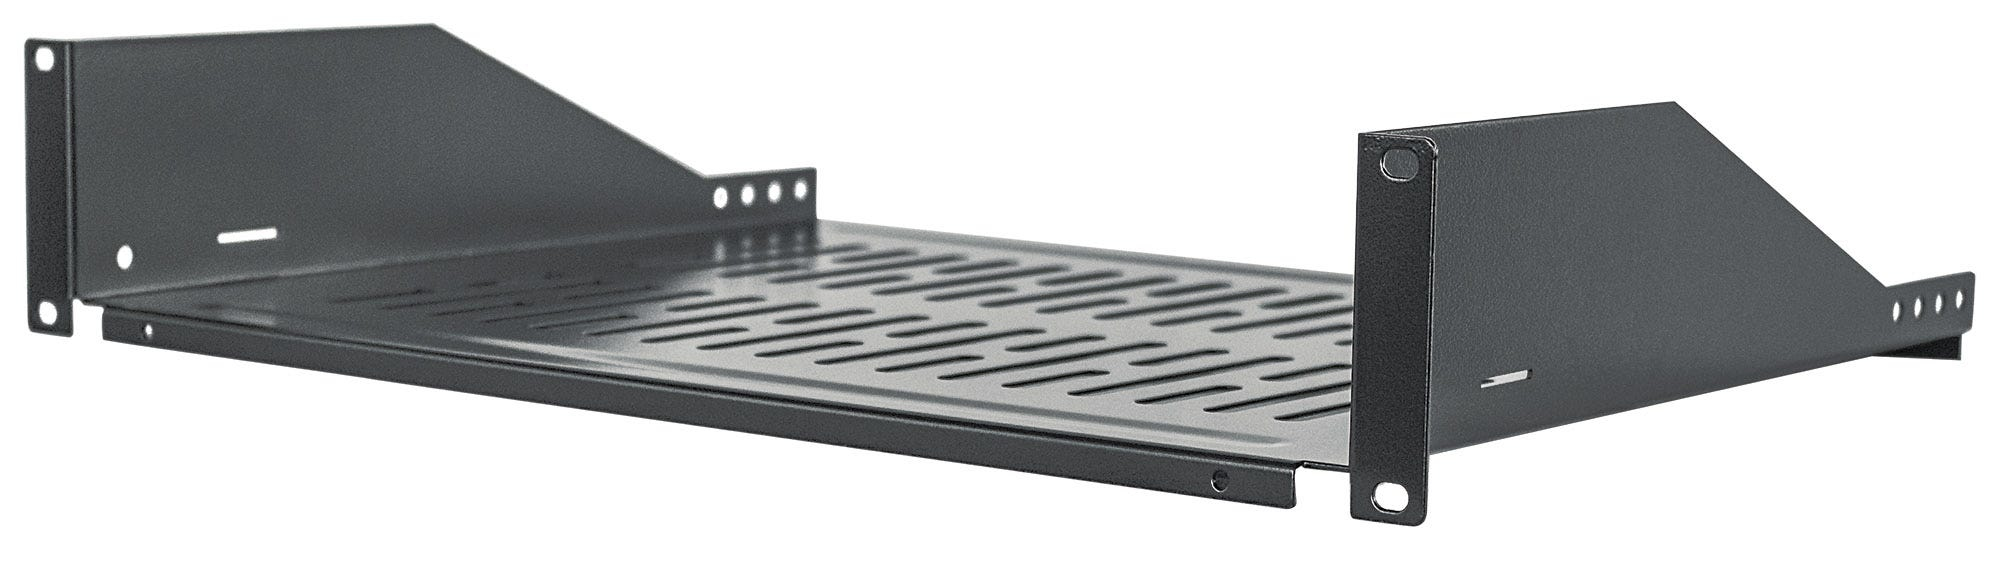 Intellinet 19" Cantilever Shelf, 2U, Fixed, Depth 350mm, Max 15kg, Black, Three Year Warranty - Rack - Regal - Schwarz, RAL 9005 - 2U - 48.3 cm (19")